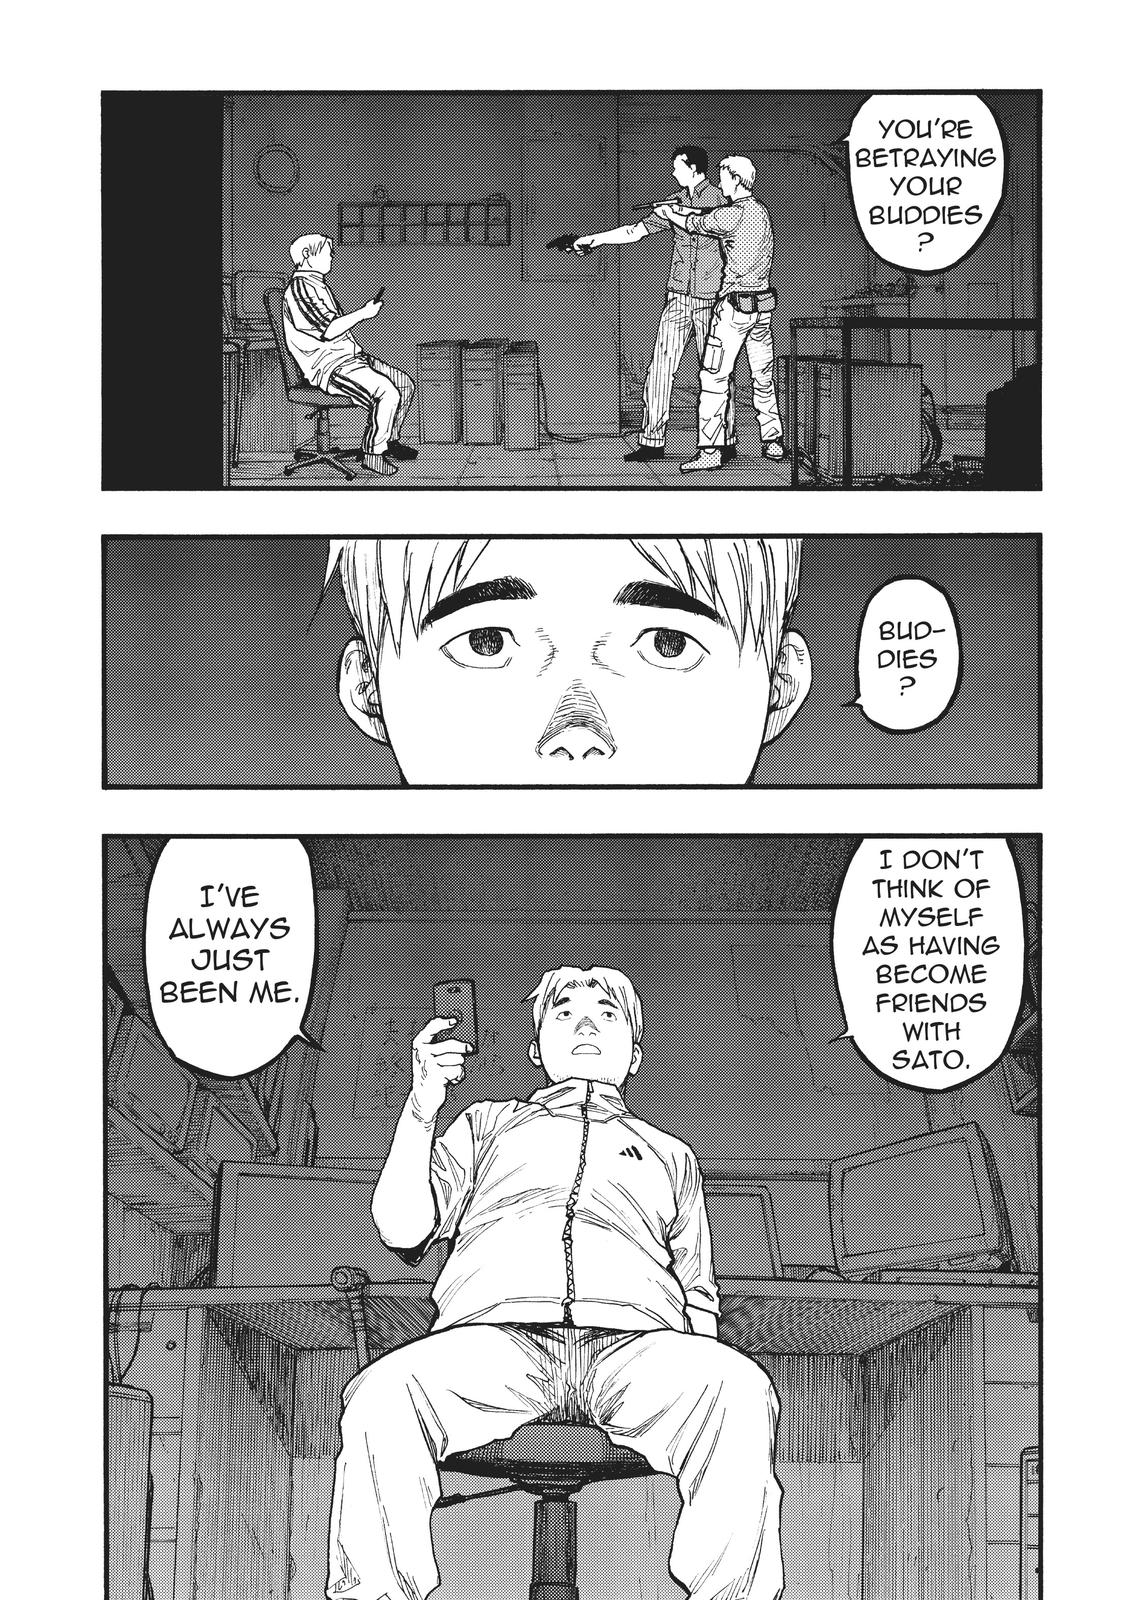 Ajin 亜人: Subhumano - Tʜᴇ Hᴇʀᴏ Vs. Tʜᴇ Vɪʟʟᴀɪɴ #AjinManga #Ajin #Manga  #GamonSakurai #KeiNagai #Sato